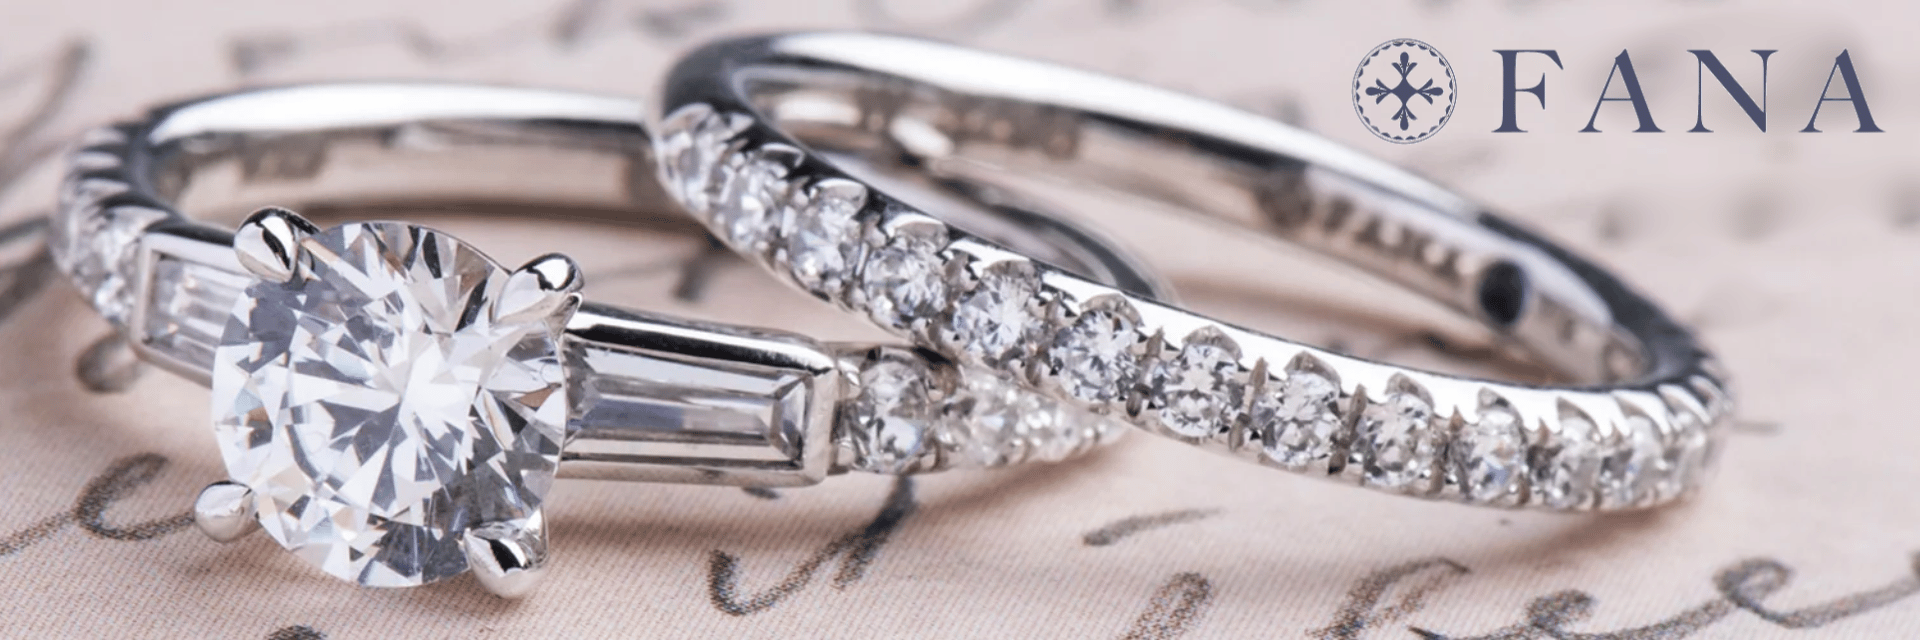 Fana Engagement Ring Dayton Ohio - Engagement Ring and Diamond Wedding Band